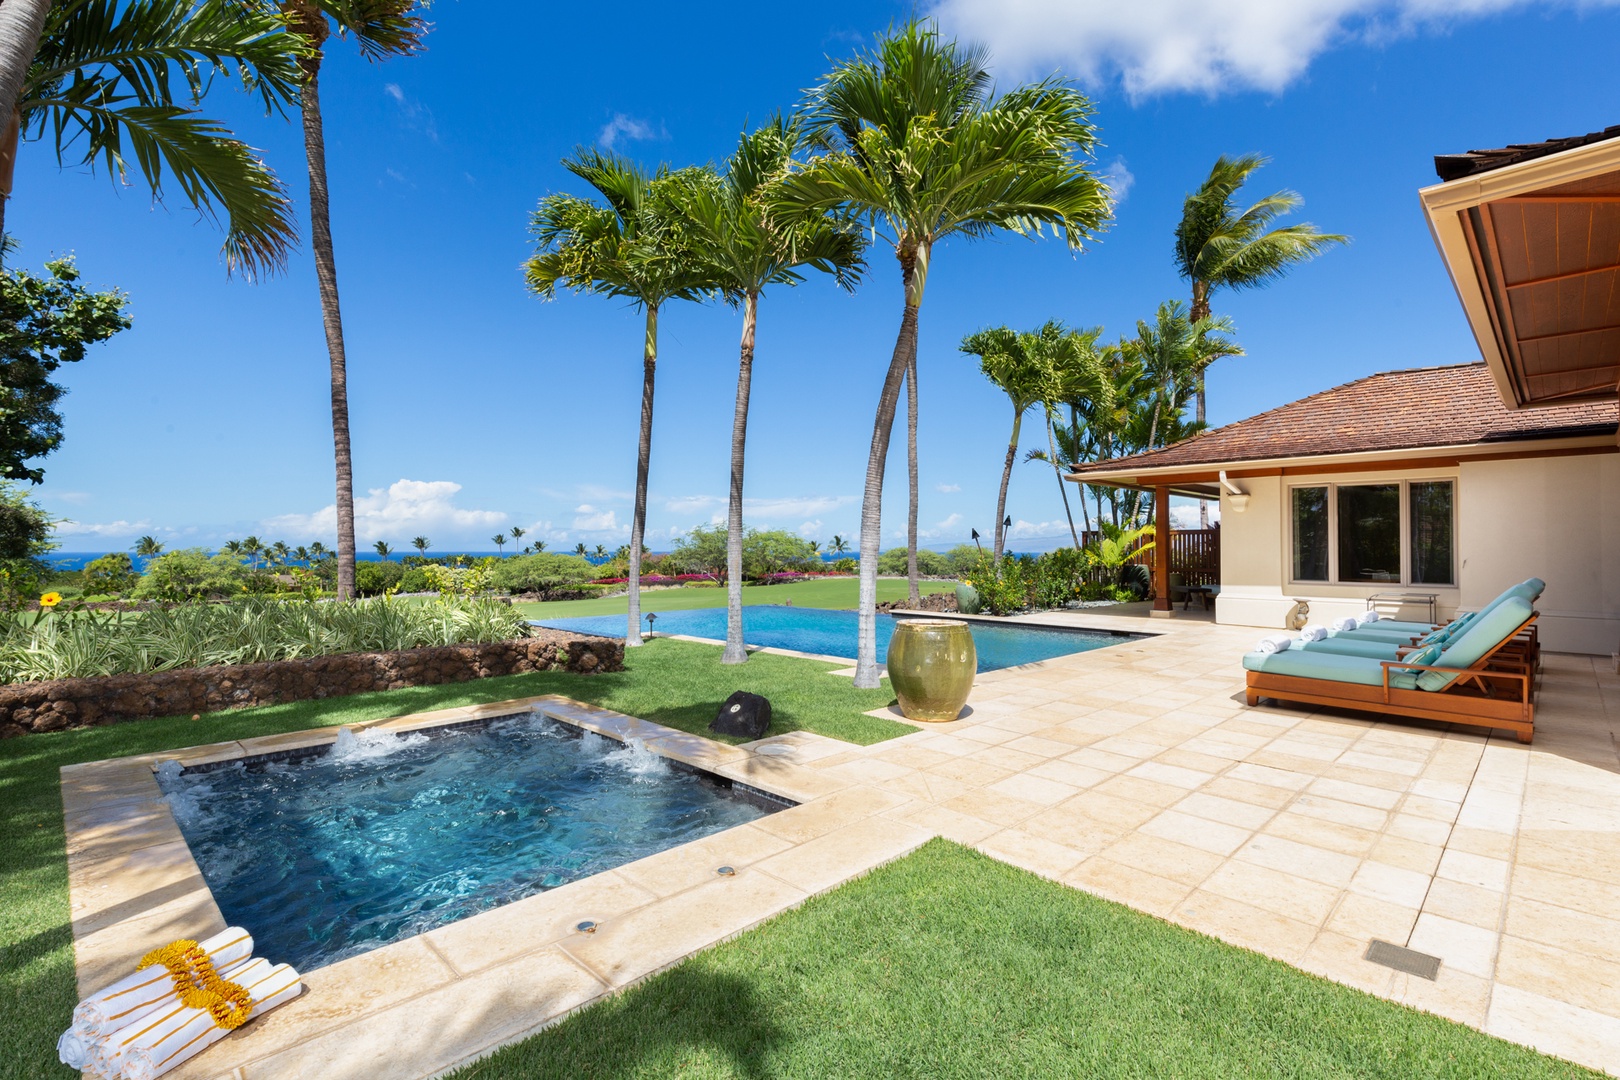 Kailua Kona Vacation Rentals, 4BD Hainoa Estate (102) at Four Seasons Resort at Hualalai - View from the yard towards the spa & pool